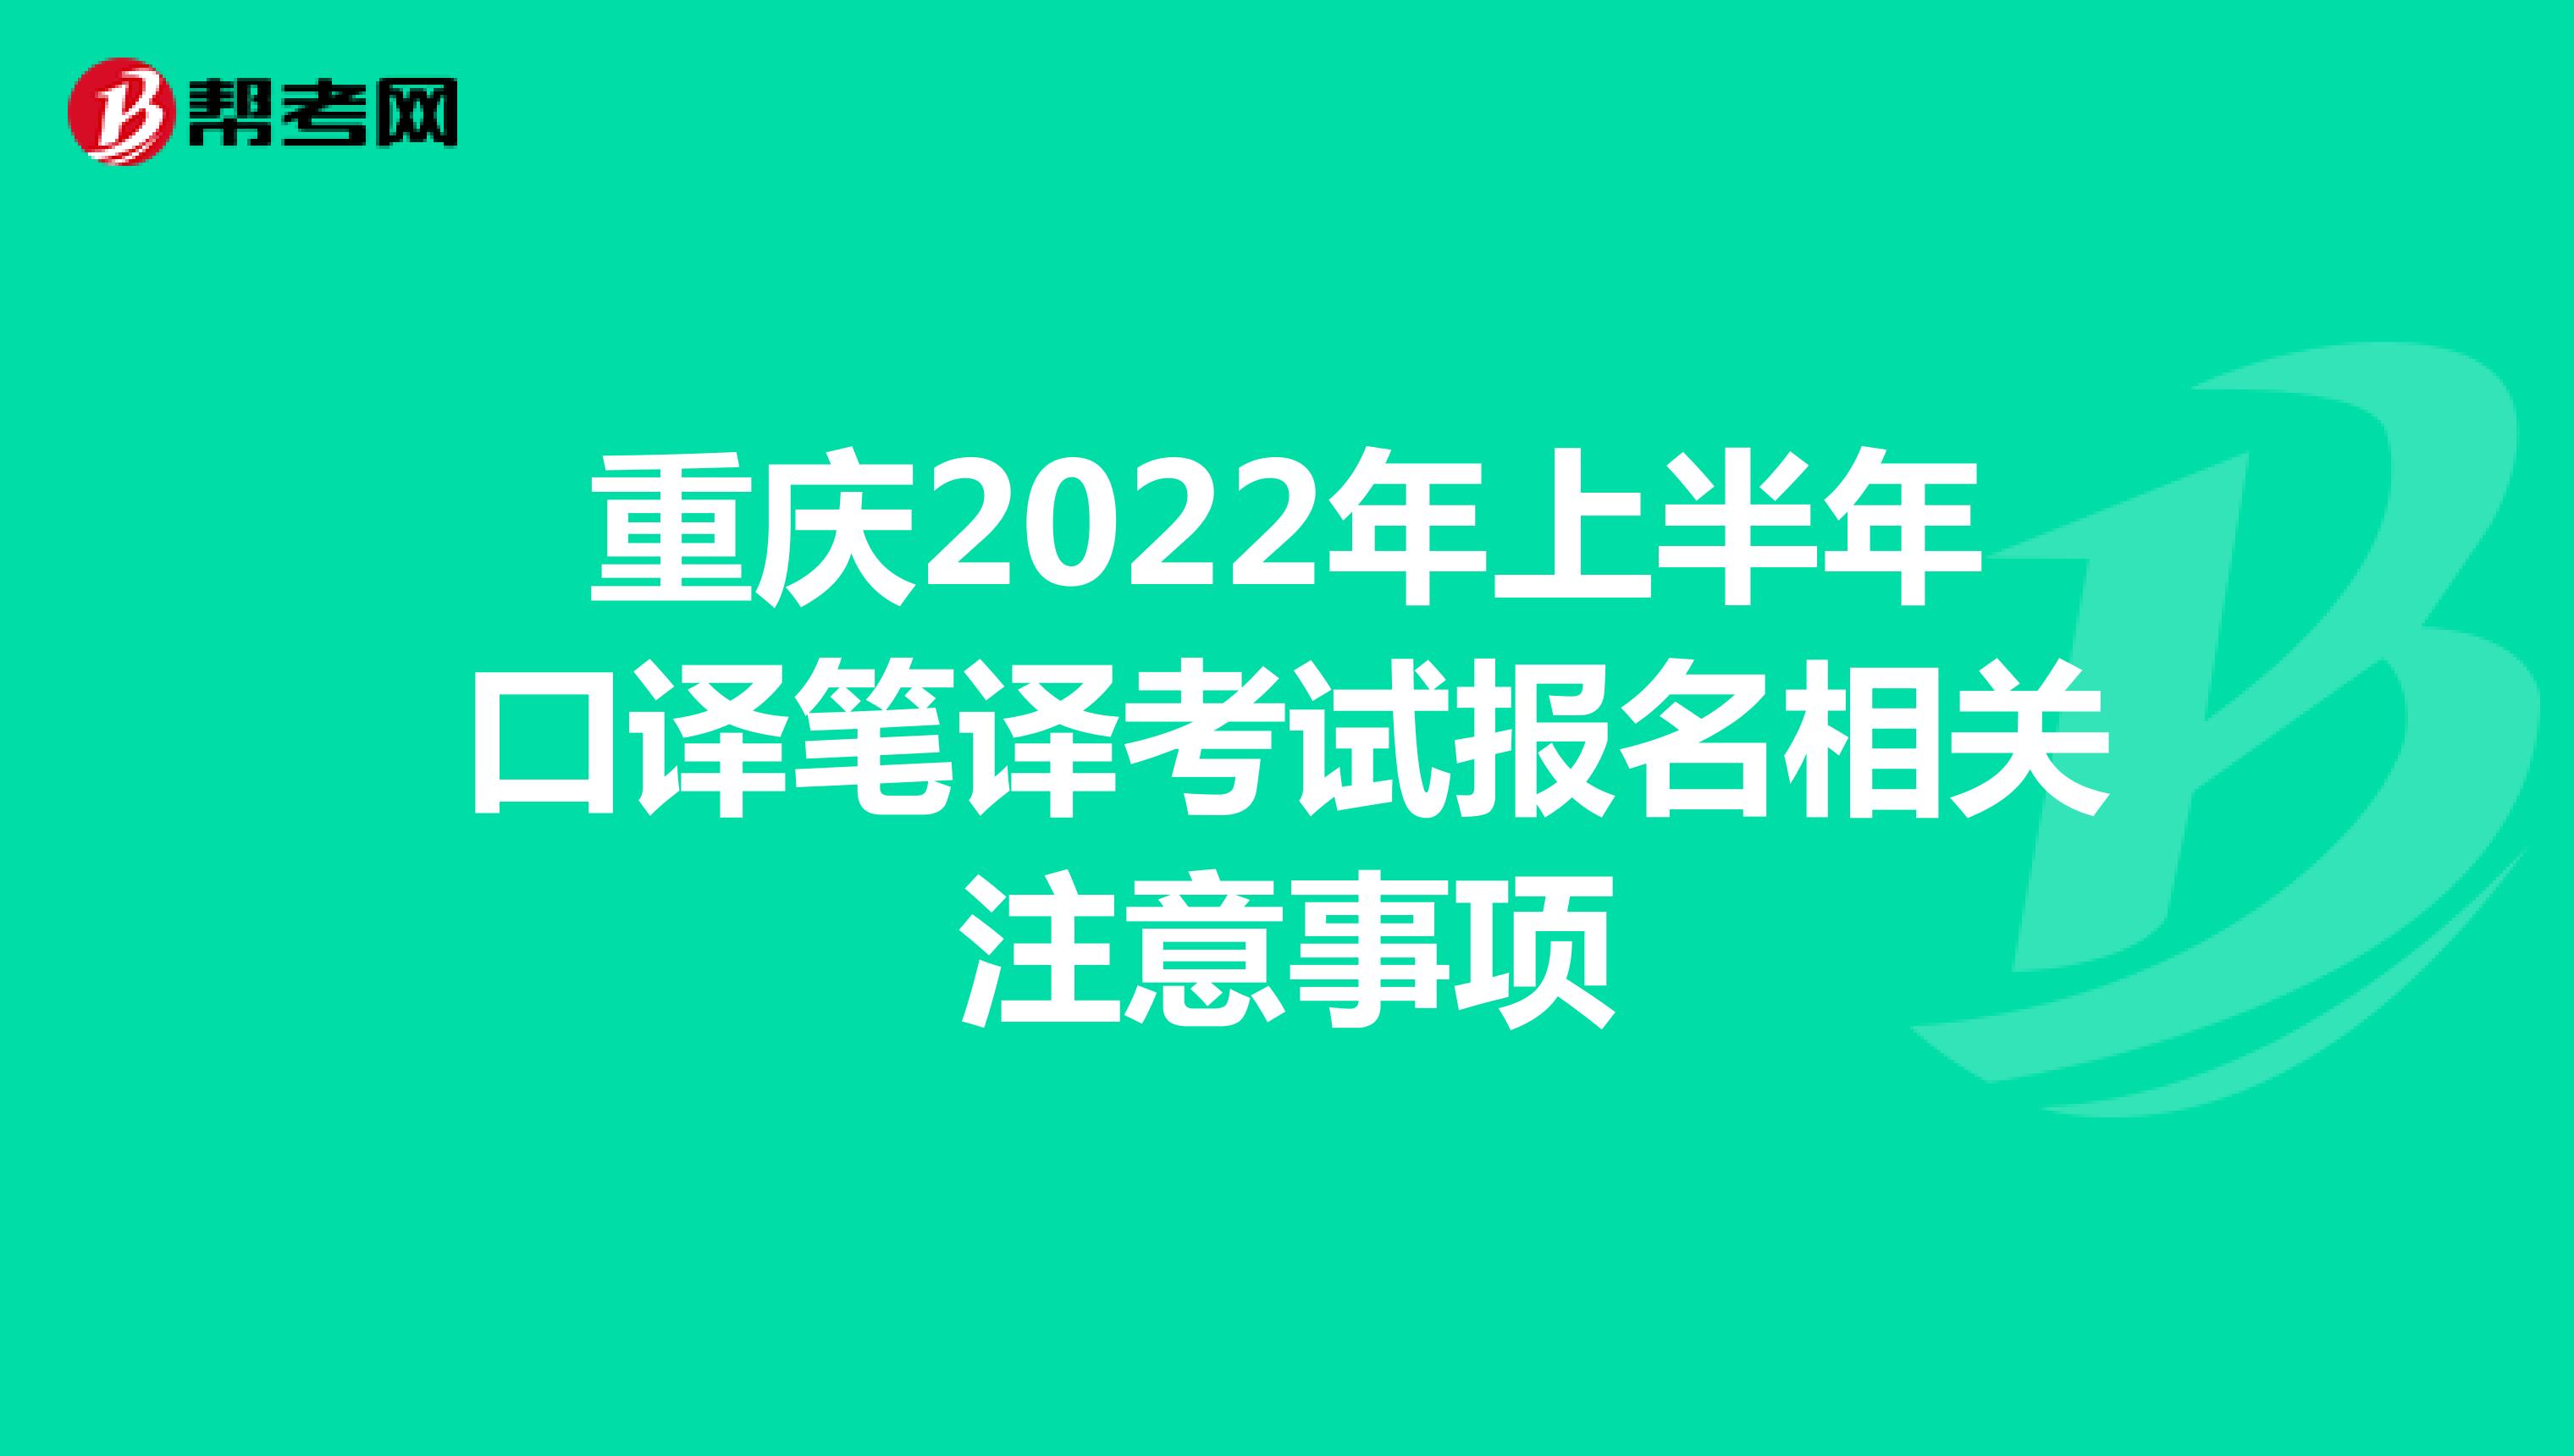 重庆2022年上半年口译笔译考试报名相关注意事项